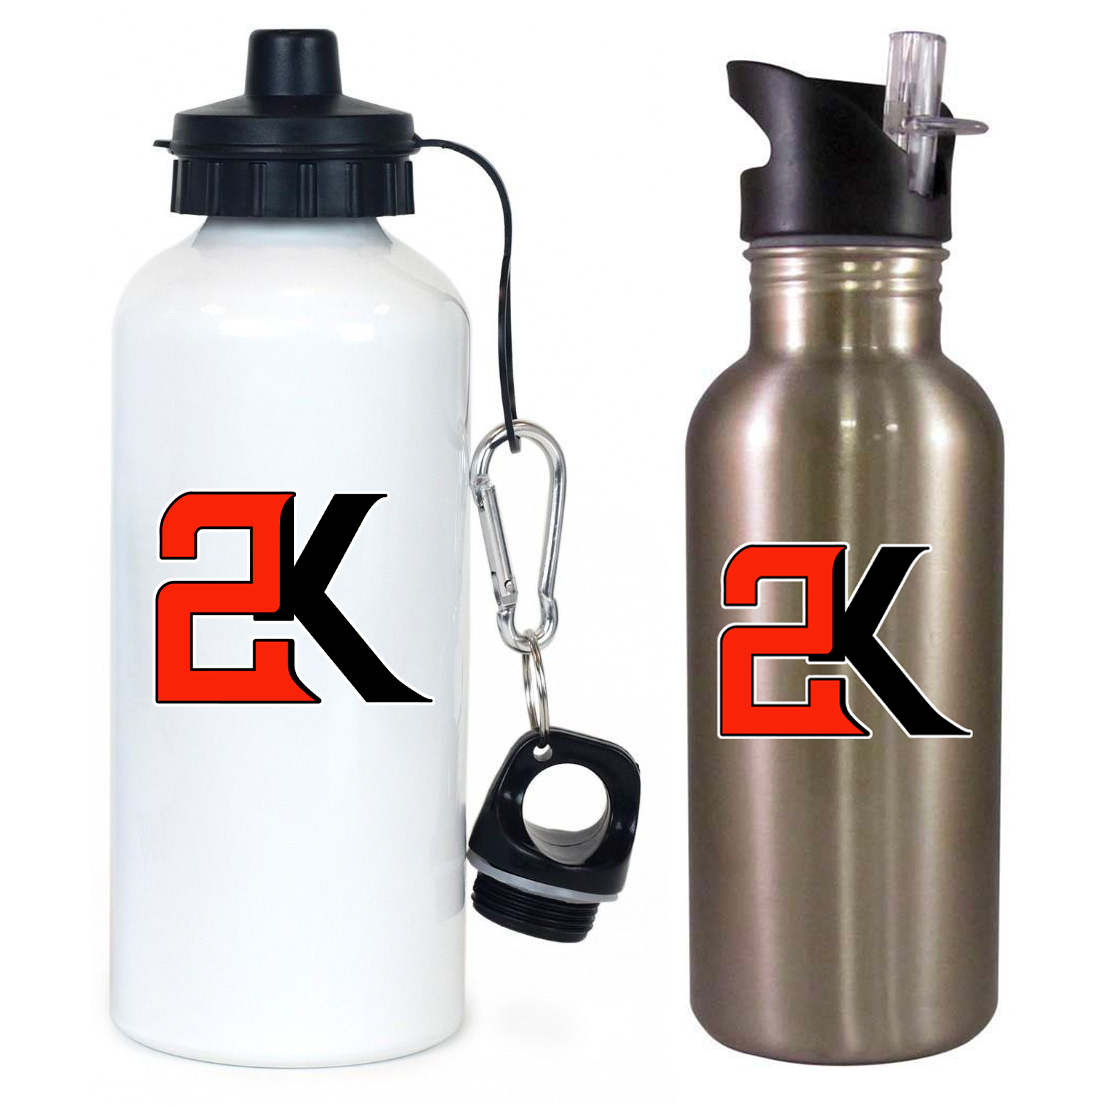 2K Softball Team Water Bottle